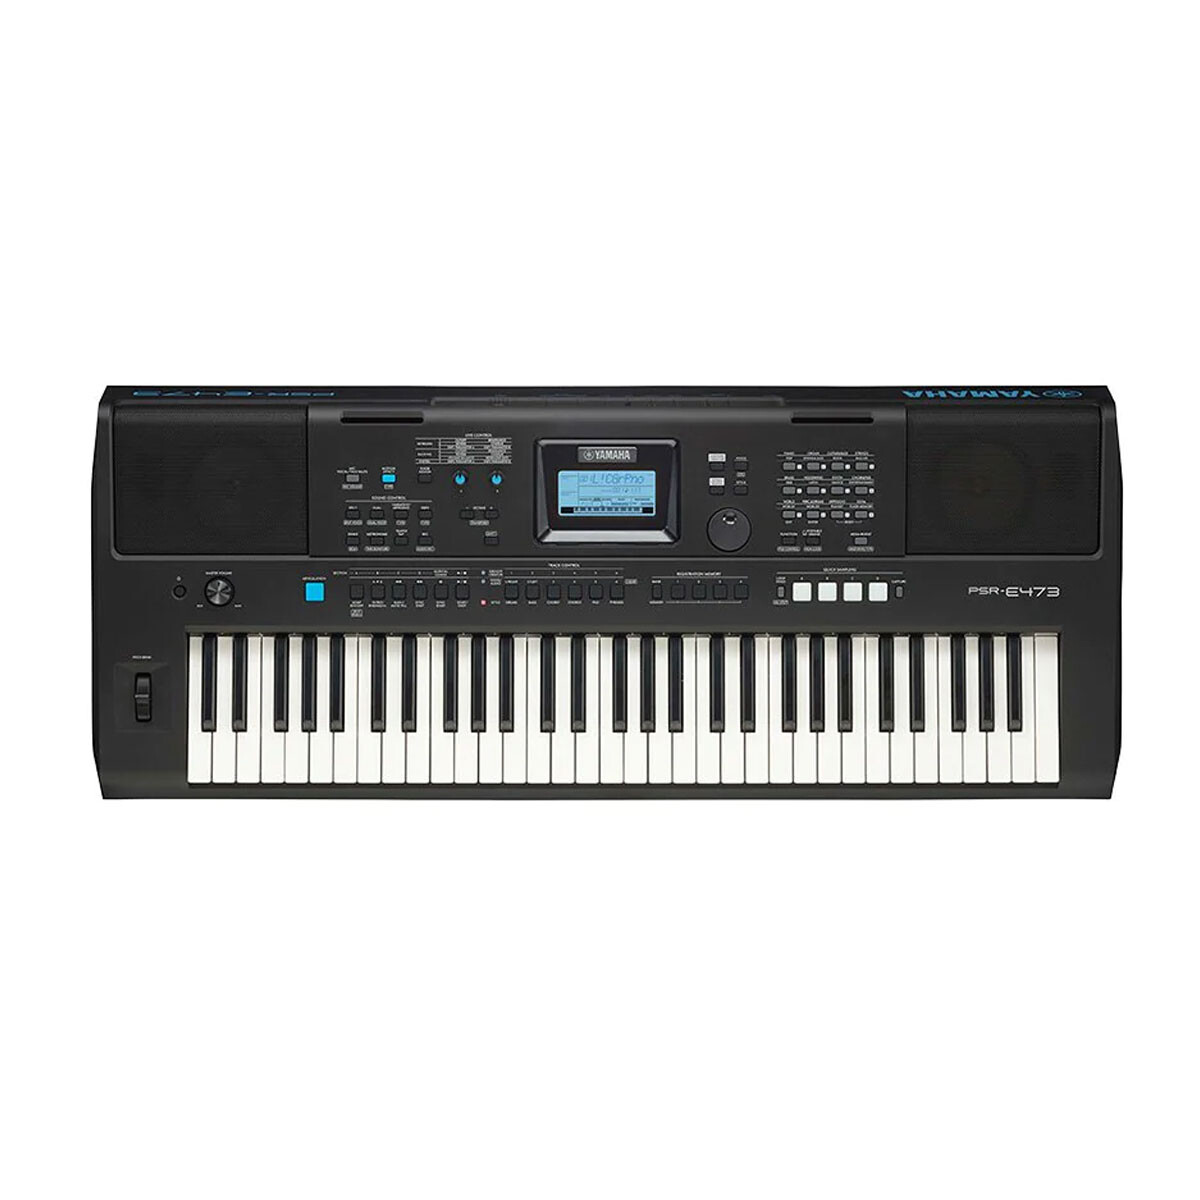 Organo Yamaha Psre473 